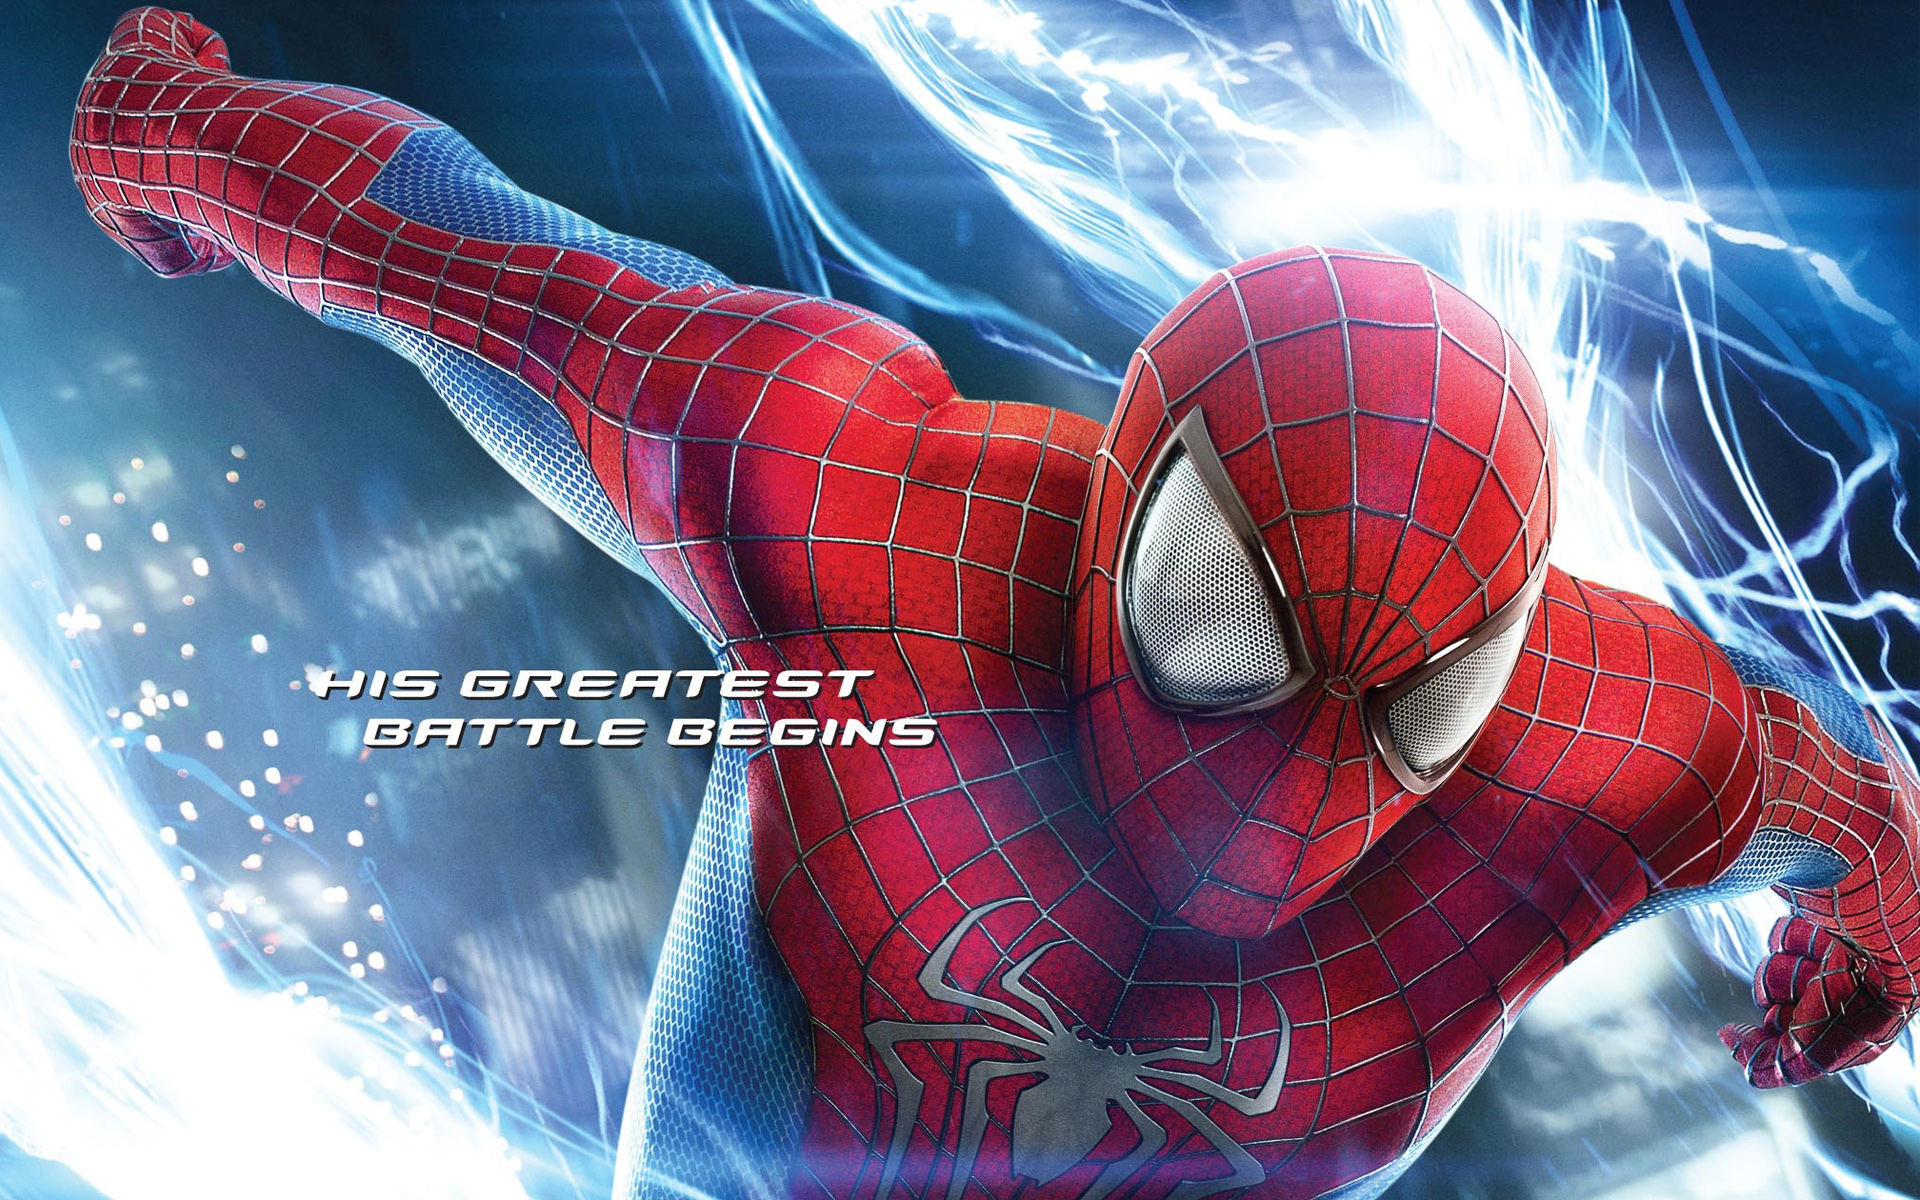 l'incroyable spider man 2 hd fond d'écran,homme araignée,super héros,personnage fictif,oeuvre de cg